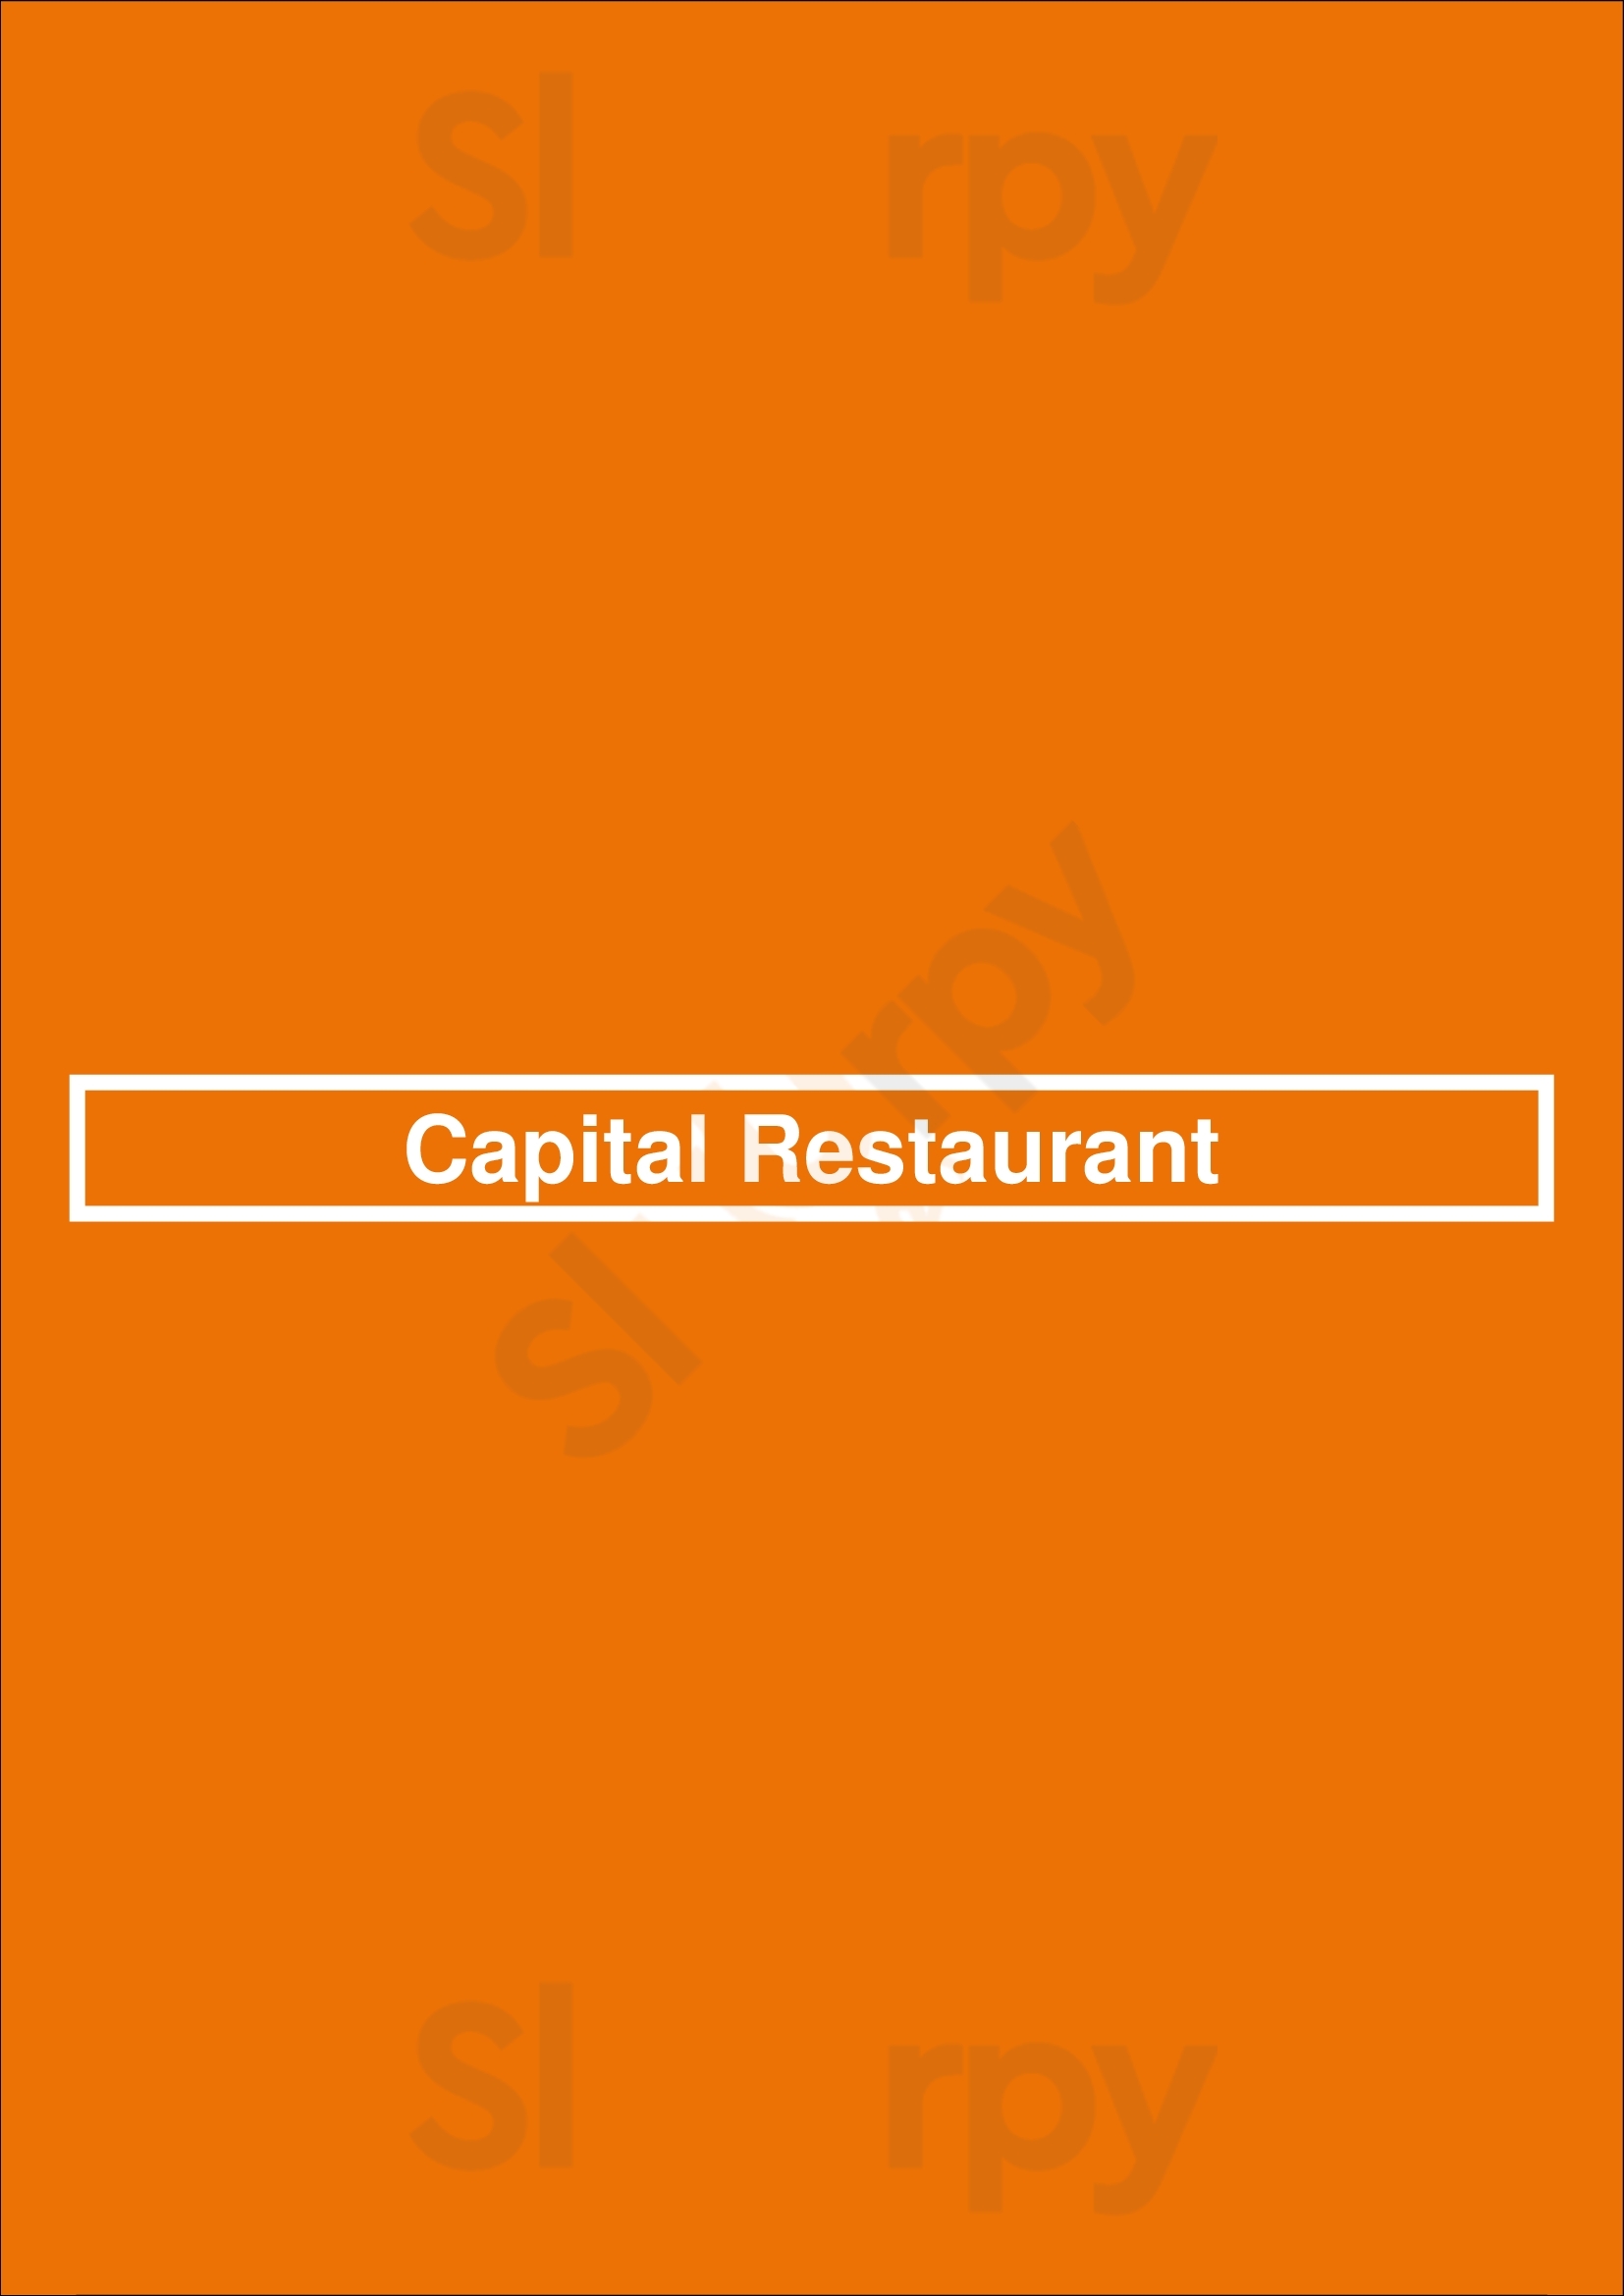 Capital Restaurant San Francisco Menu - 1